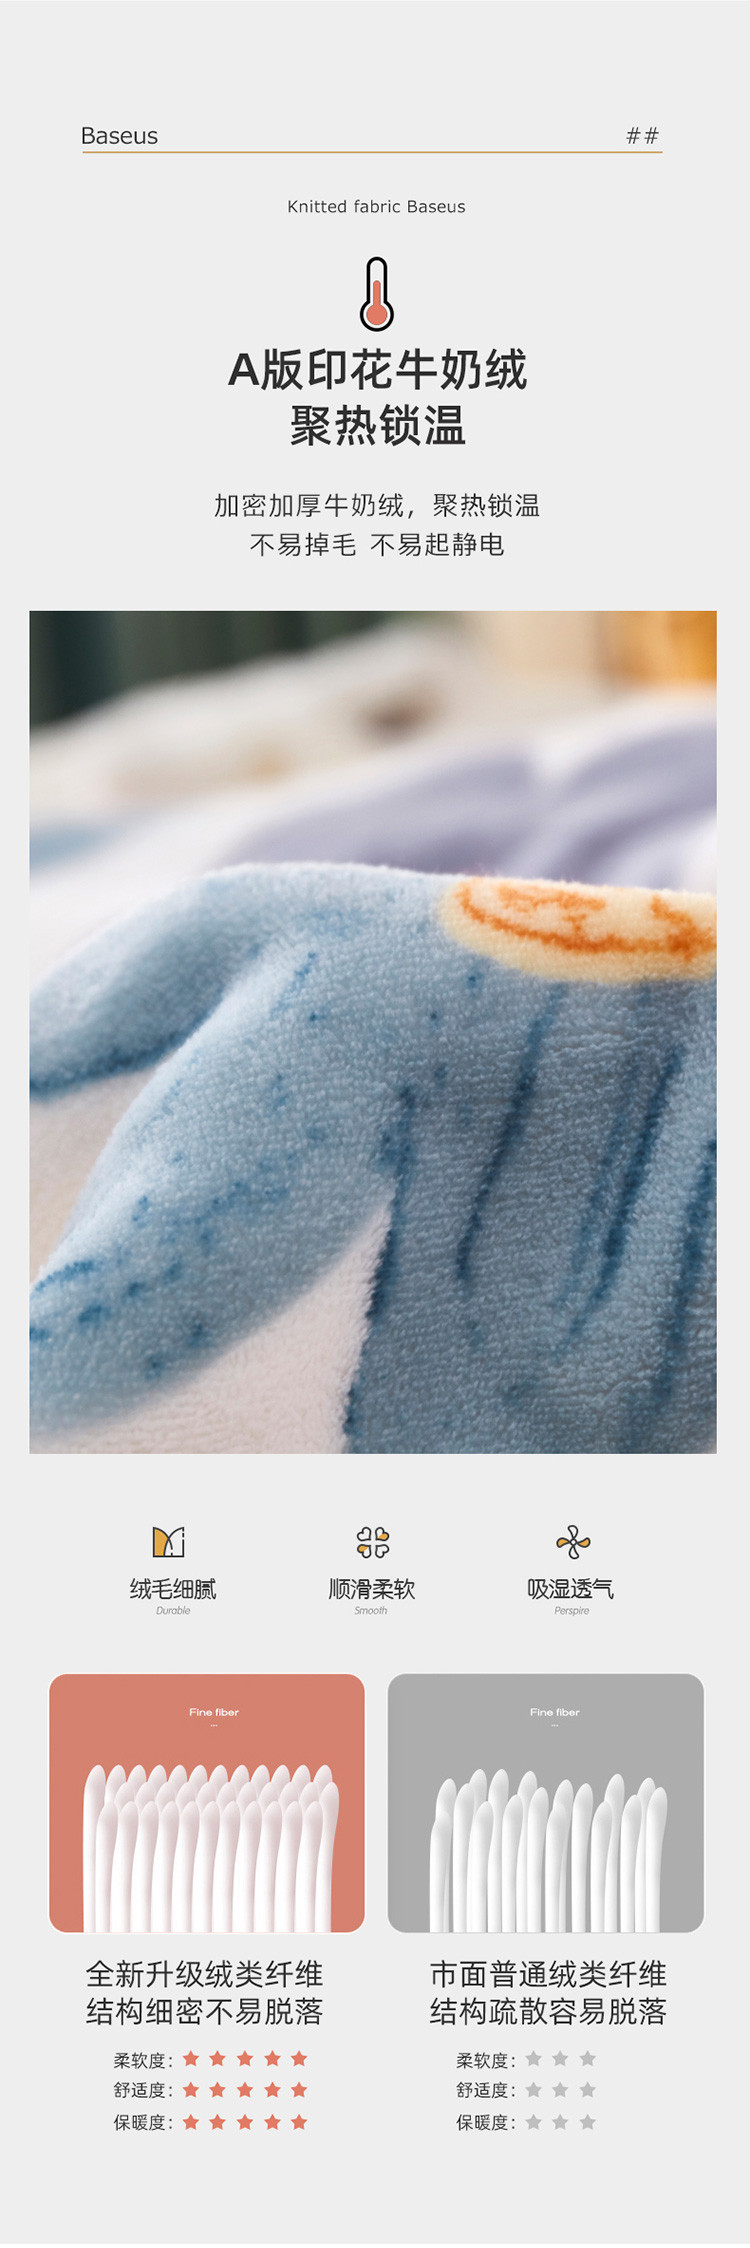 雅乐巢/GAGKUNEST 毛毯被子加厚保暖珊瑚法兰绒冬季盖毯子沙发空调床上用单人羊羔绒印花毛毯